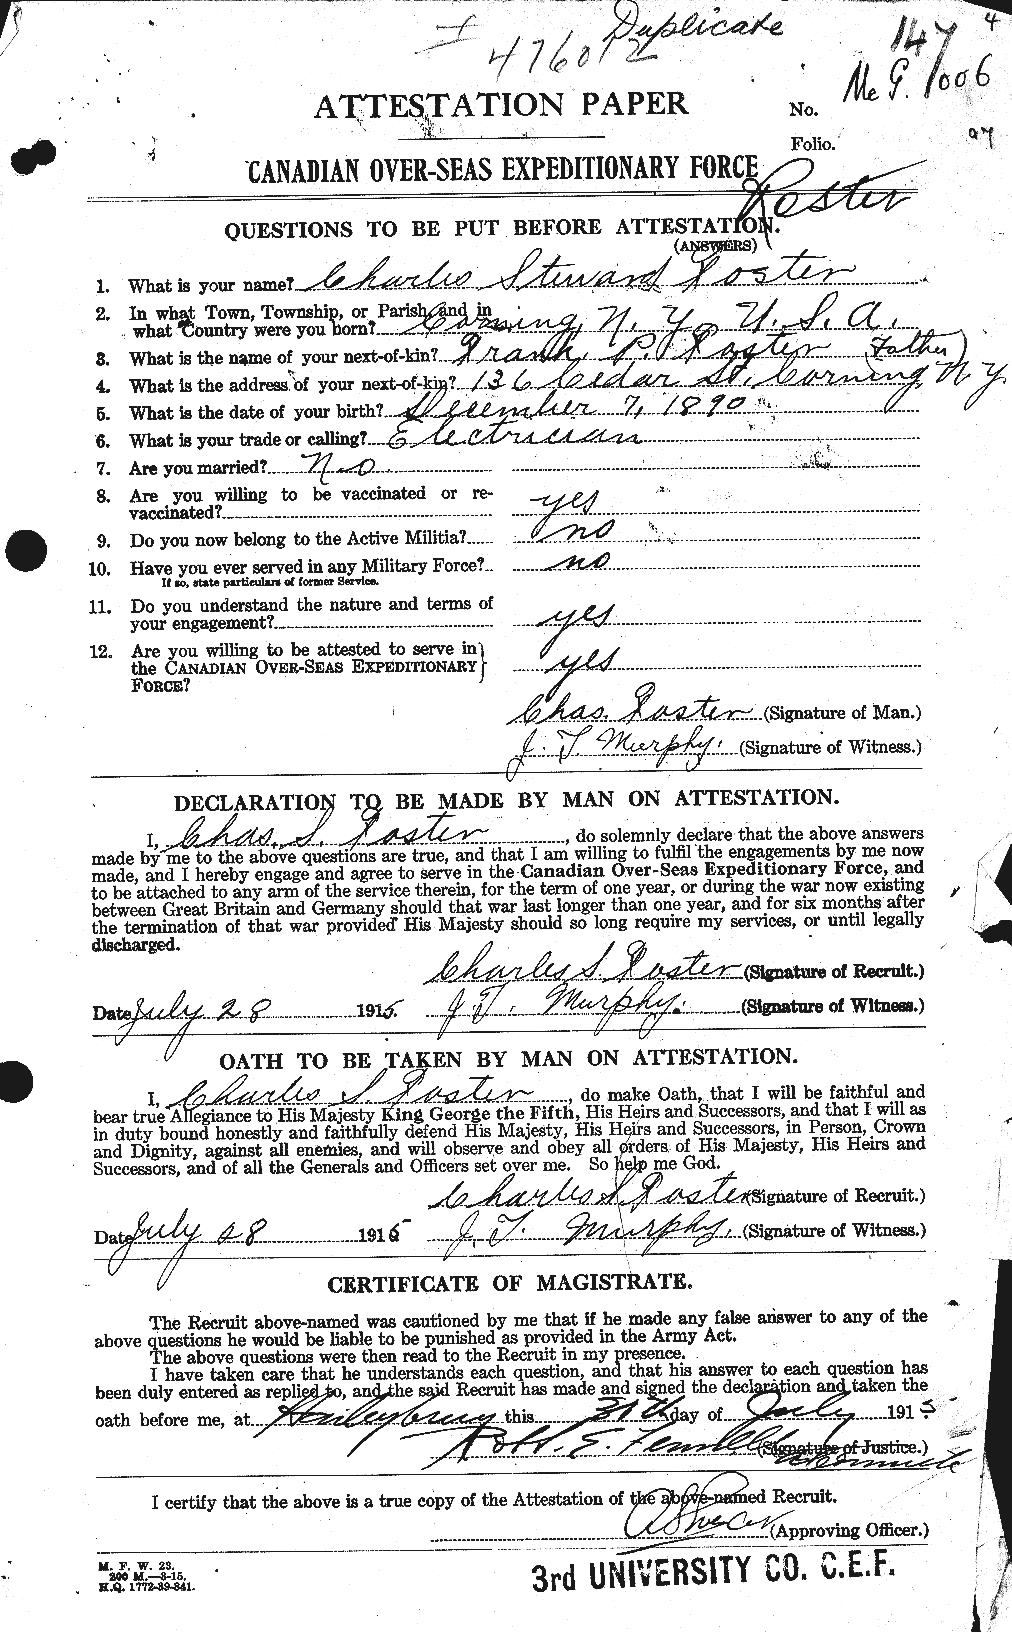 Dossiers du Personnel de la Première Guerre mondiale - CEC 330527a